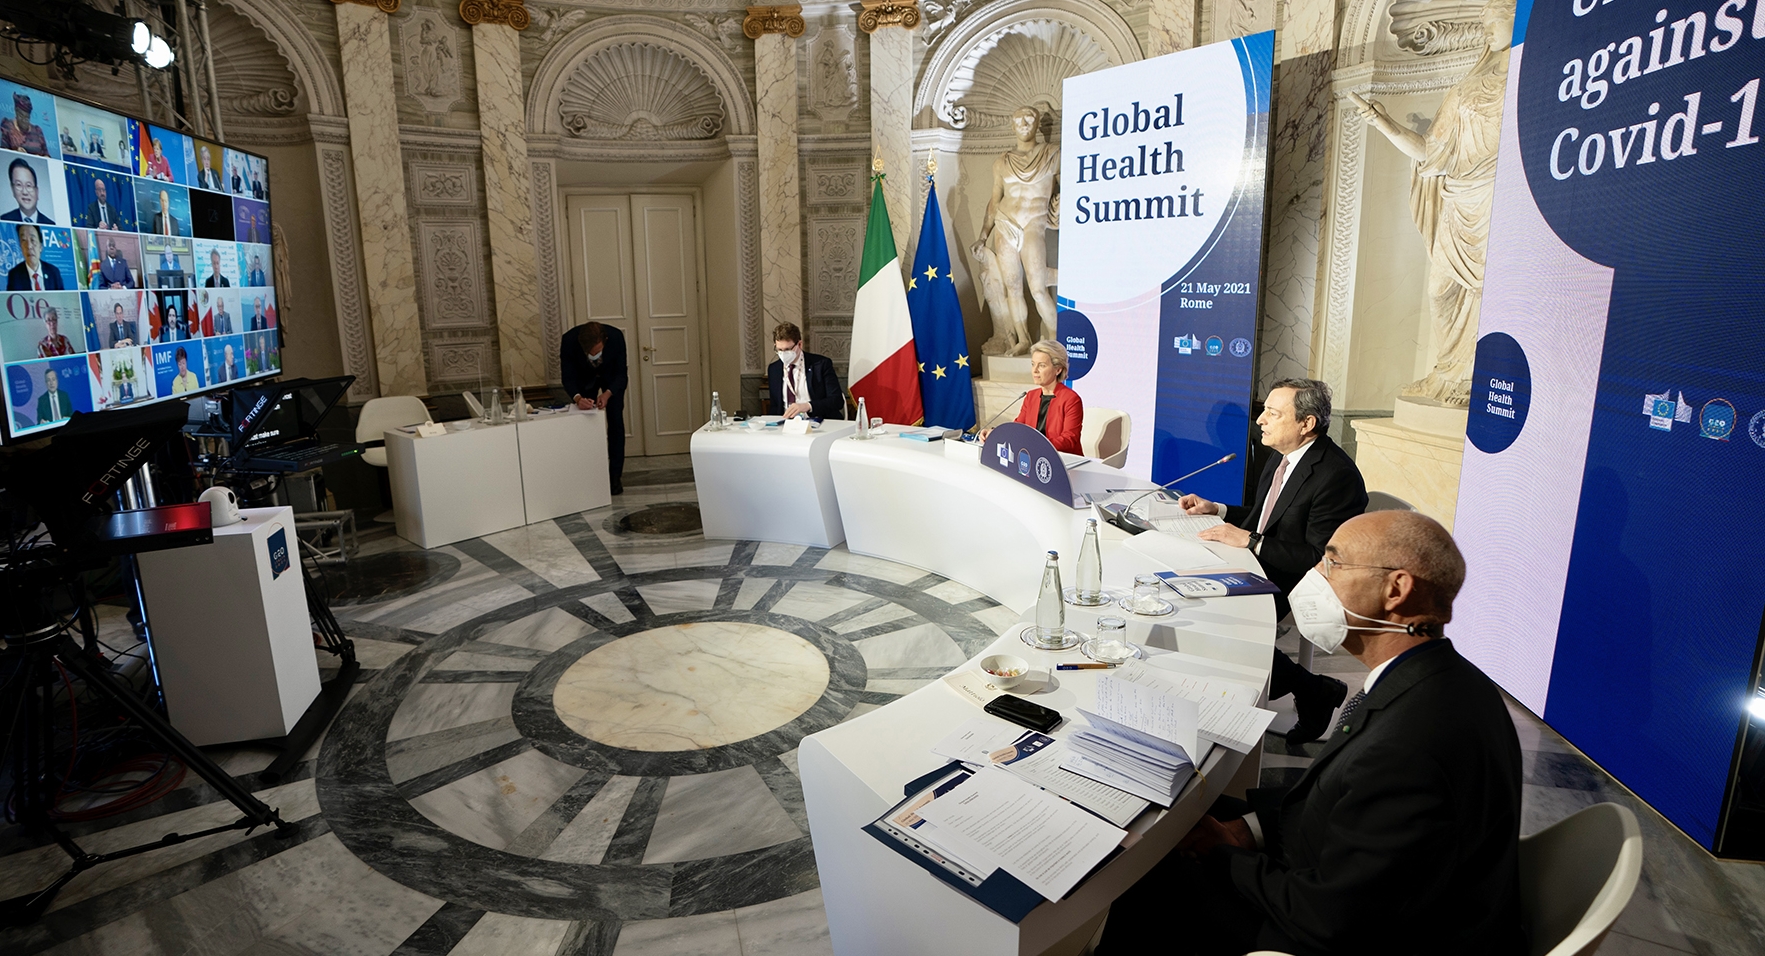 Global Health Summit, von der Leyen: vertice di importanza storica